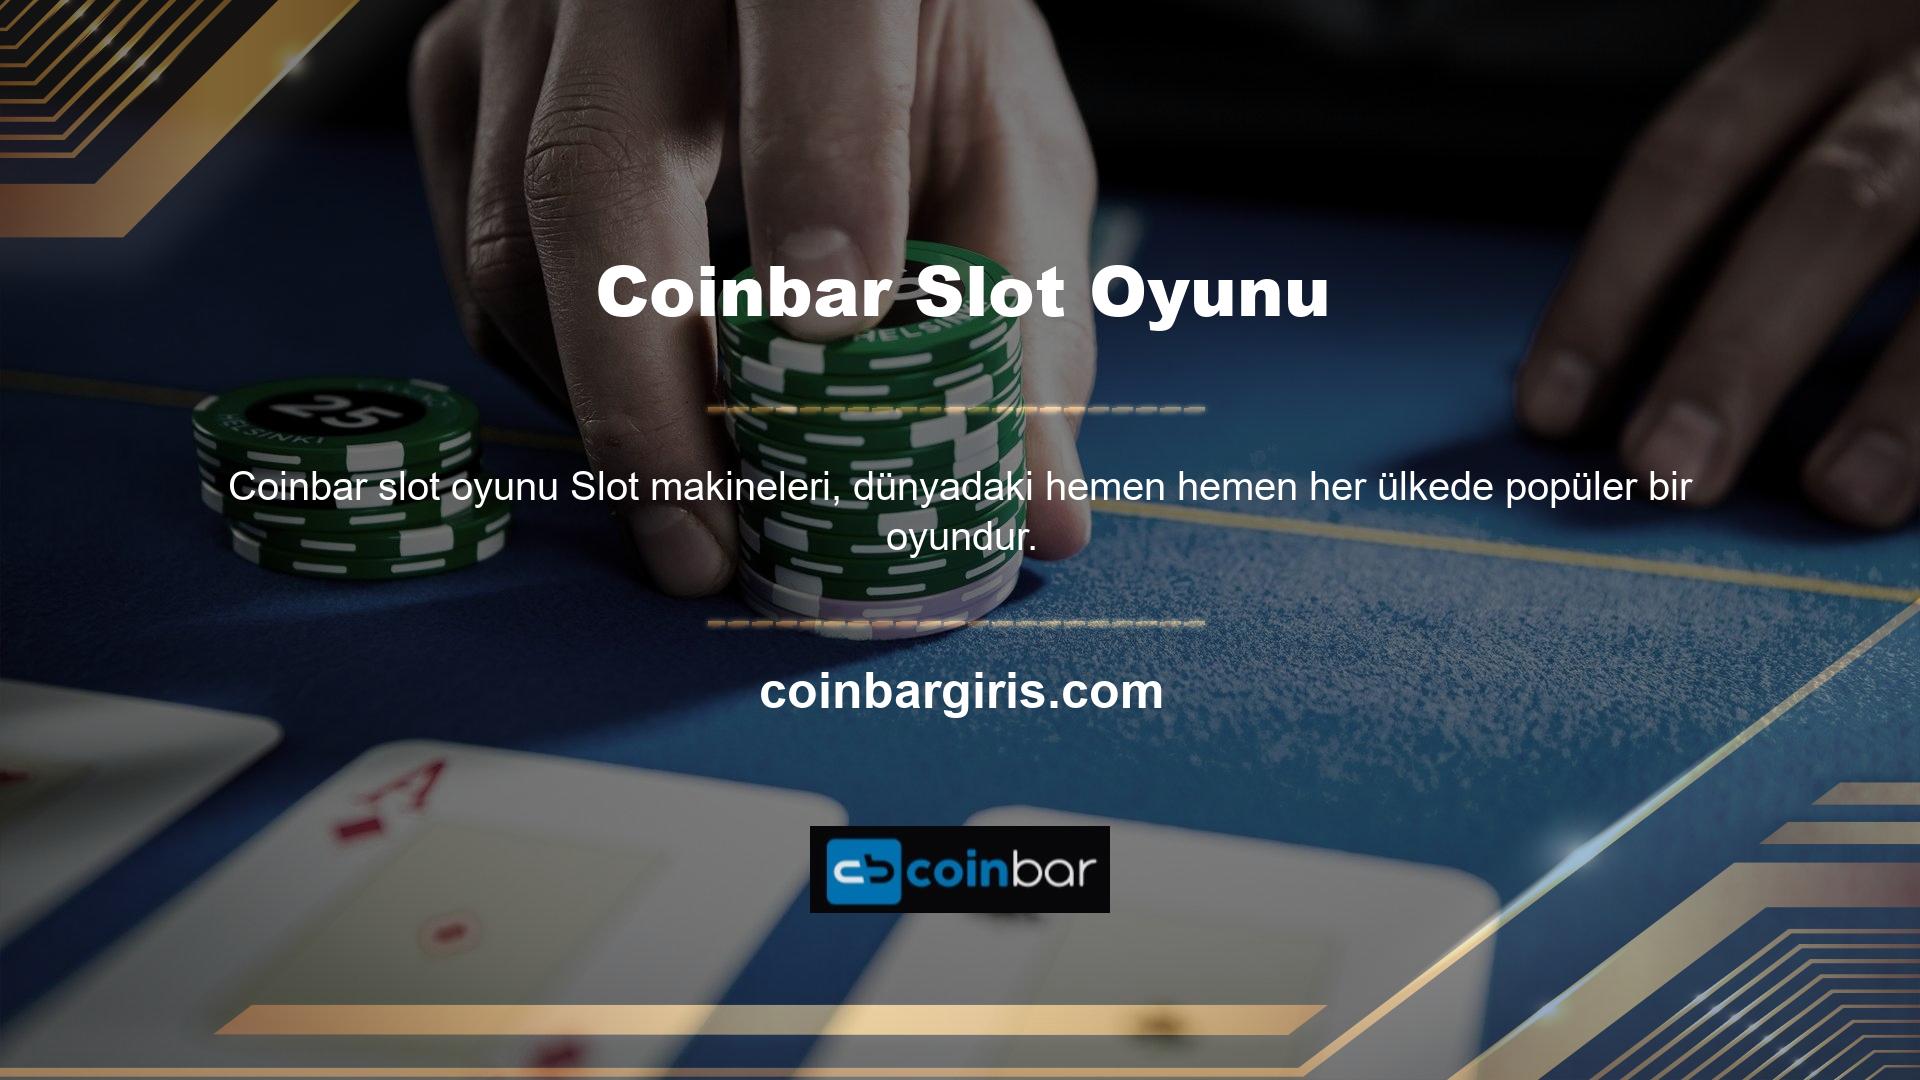 Coinbar, casino menüsünde oyun sağlayıcısına veya kategoriye göre listelenebilen slot oyunları sunmaktadır